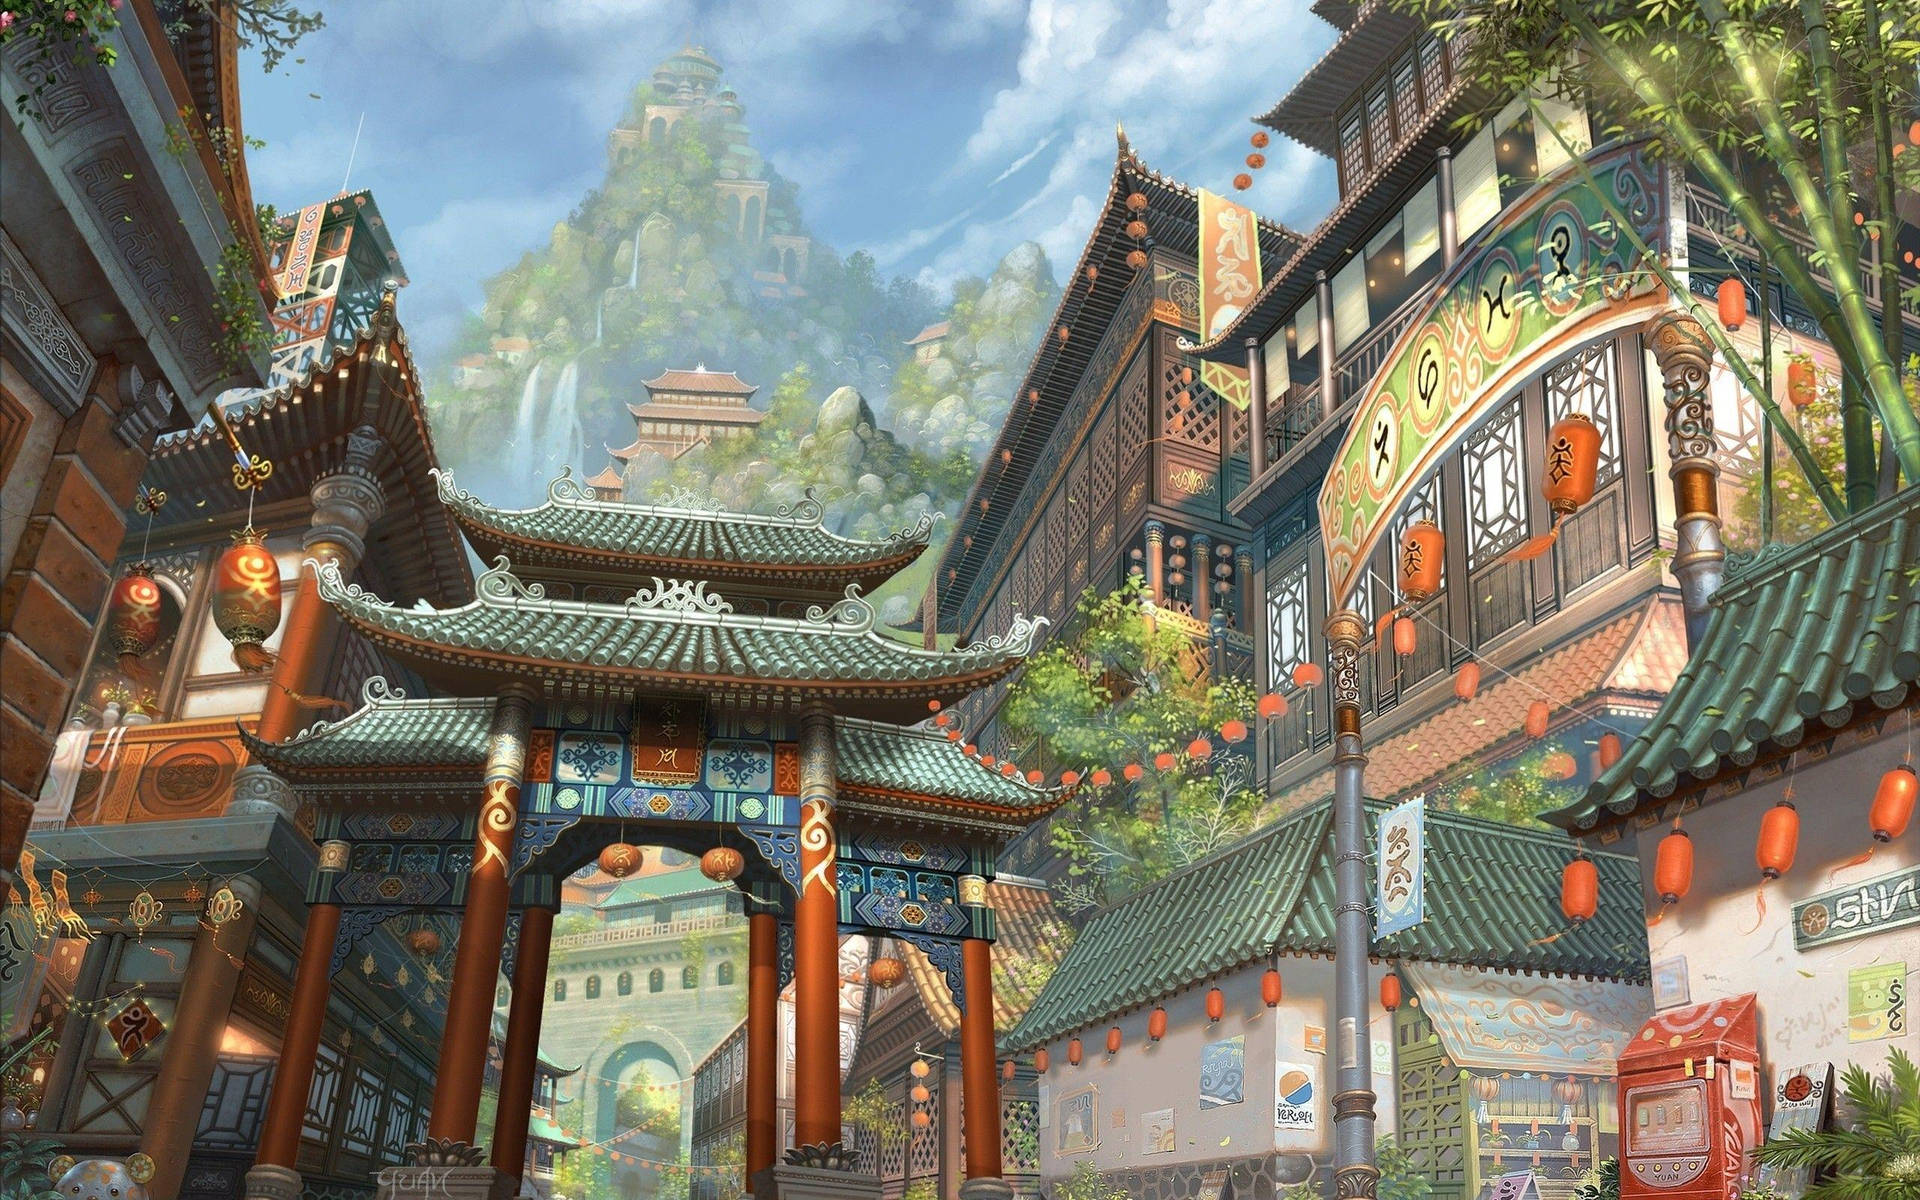 Chinatown gamle huse: Inspirer dig selv med design fra de gamle kinesiske haver. Wallpaper